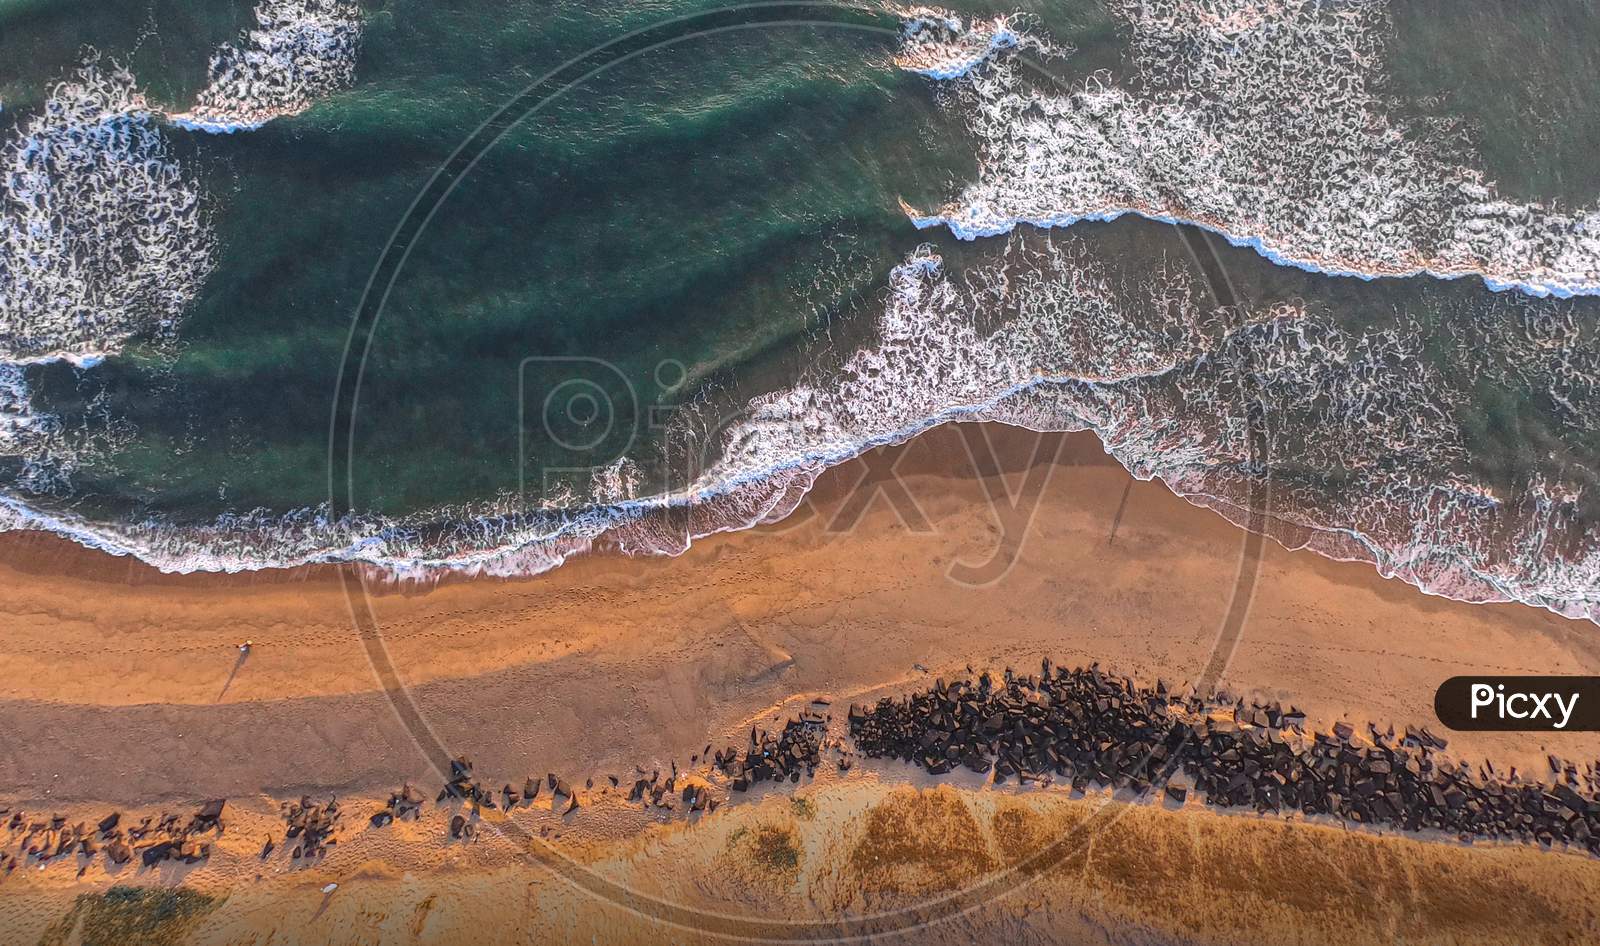 Chennai,India ; An aerial photo of a seashore